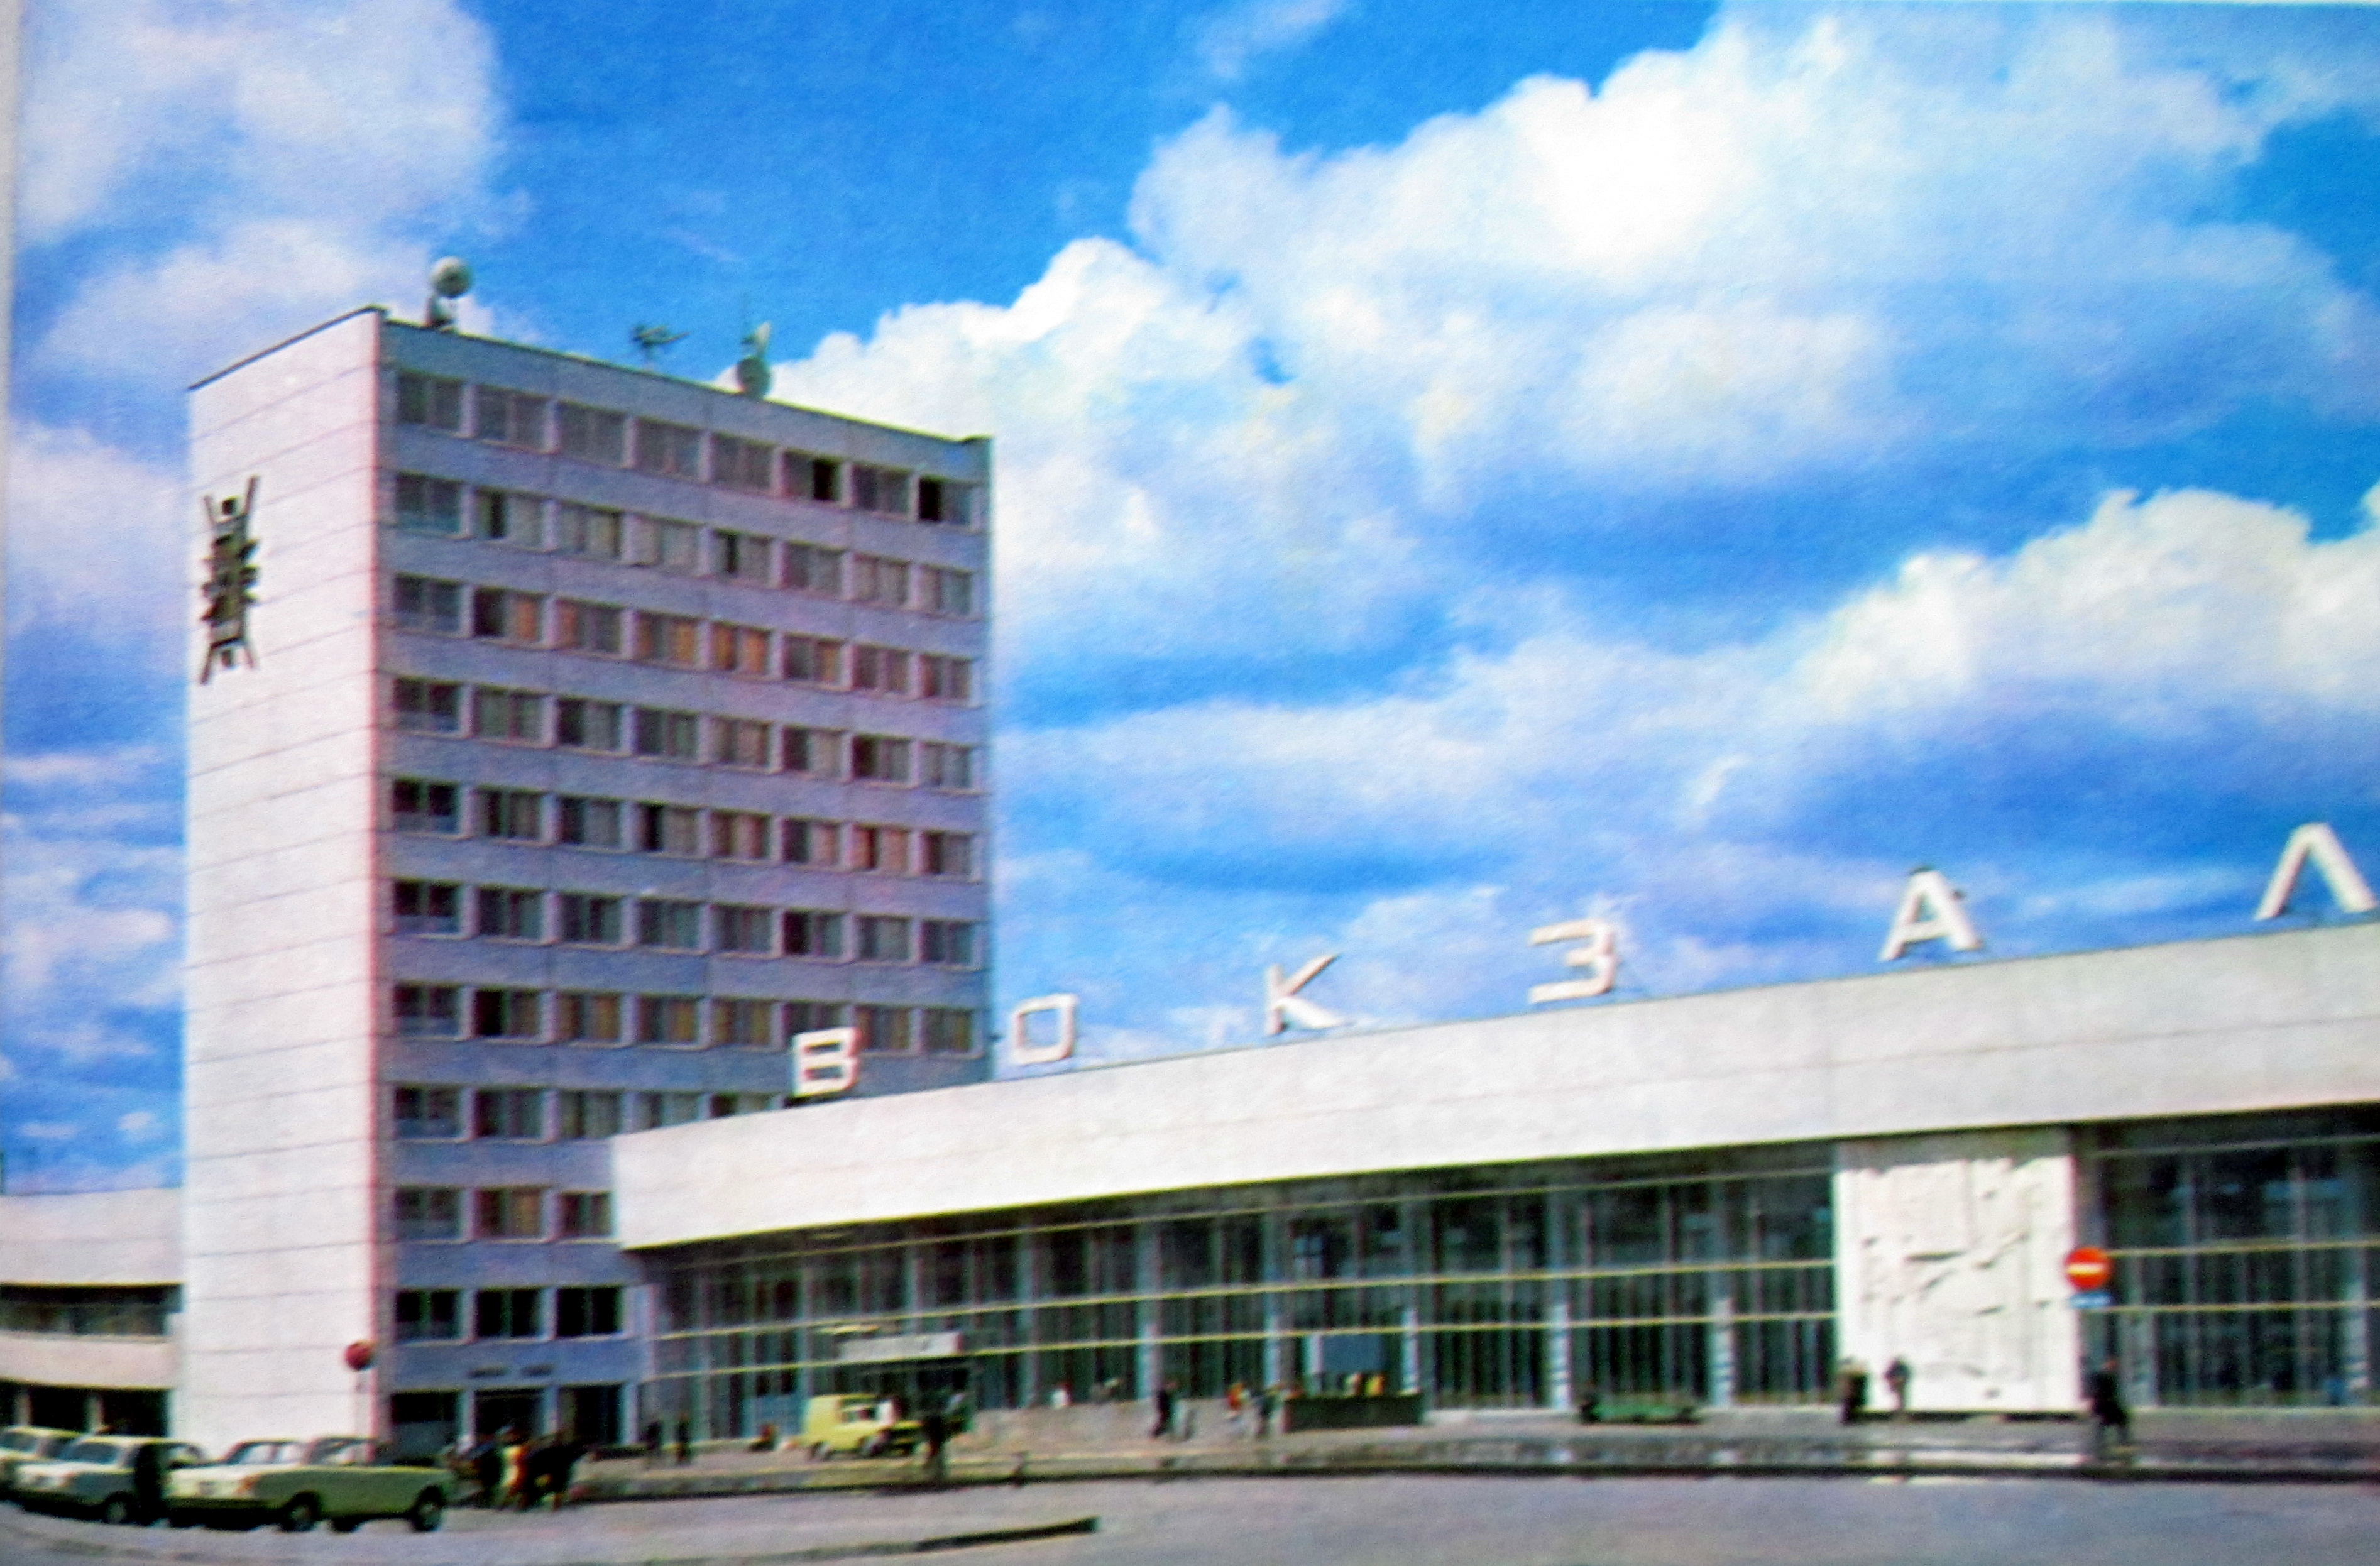 Penza Train Station 1978 вокзал Пенза 